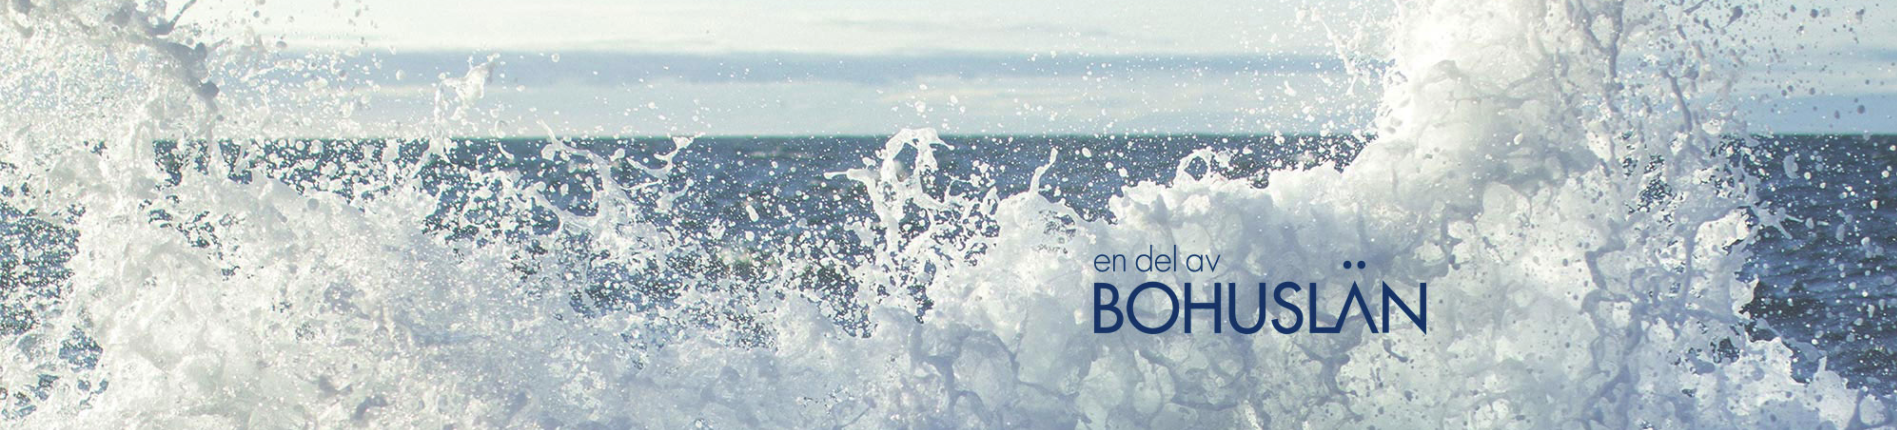 exempelbild, havsvågor och texten Bohuslän